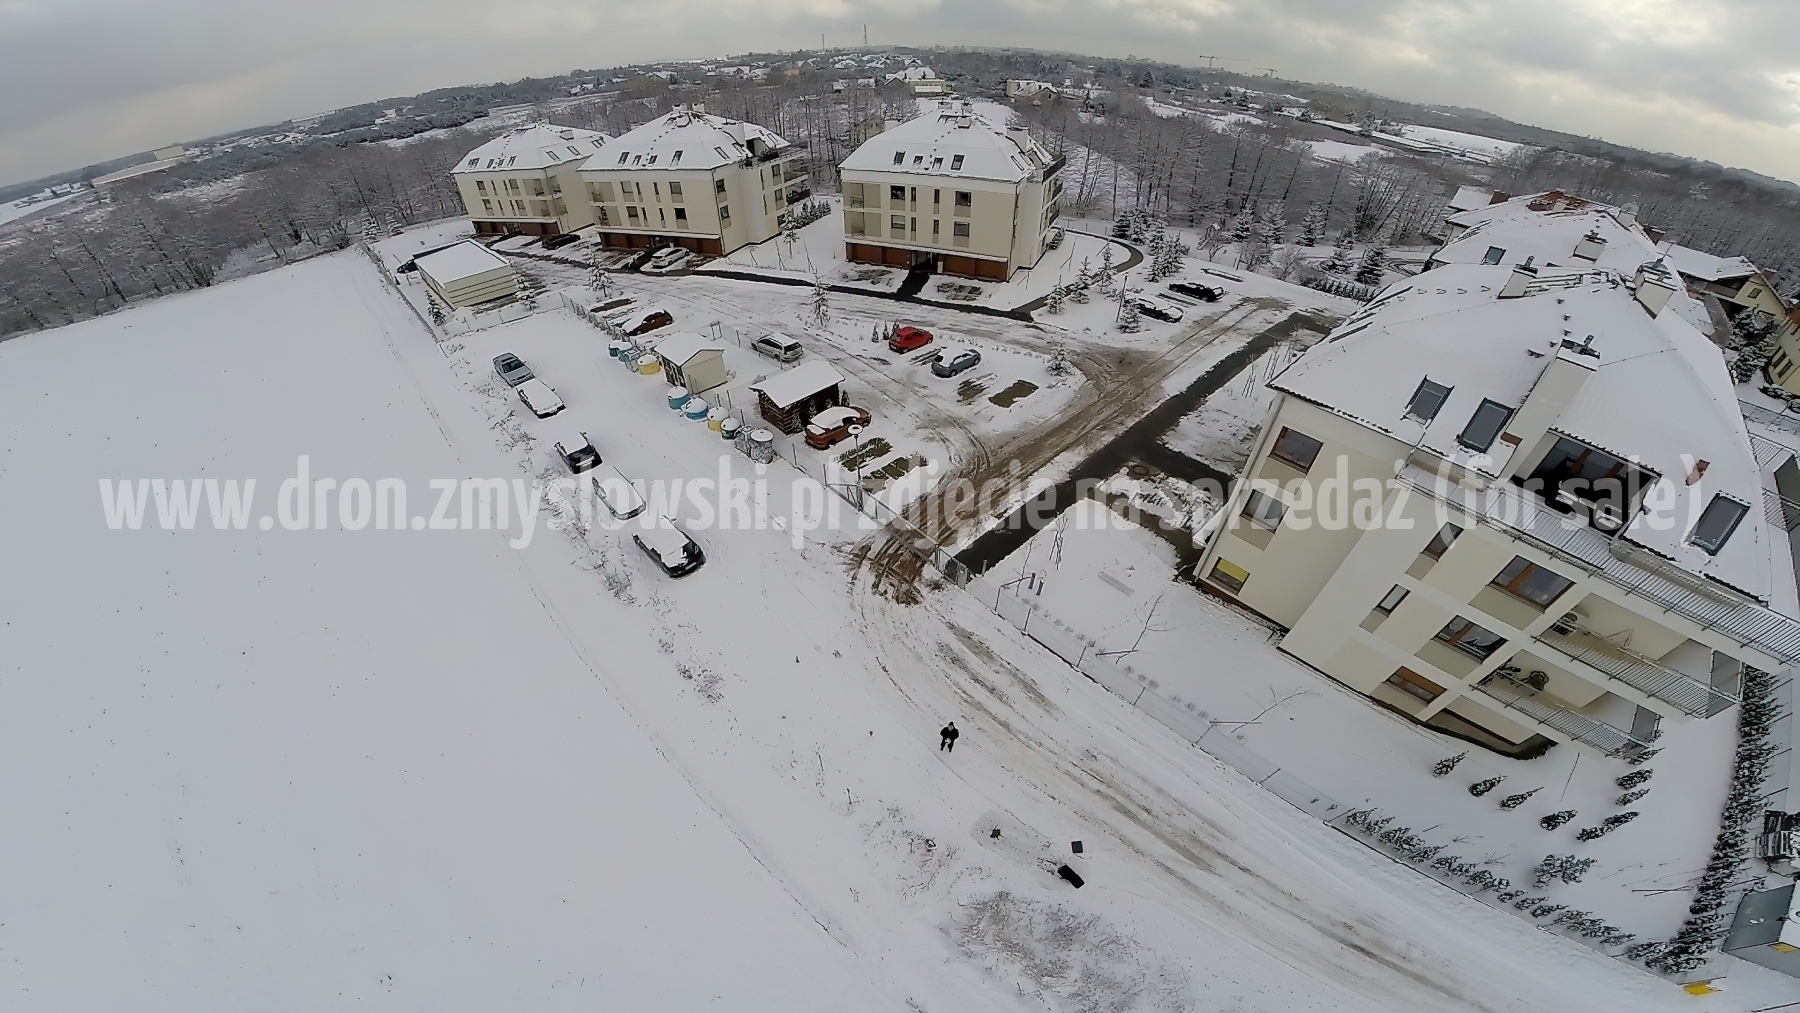 2015-02-04-dron-w-Niemczu-na-ul-Elizy-Orzeszkowej-zima-013-gigapixel-standard-width-3840px-SharpenAI-Standard